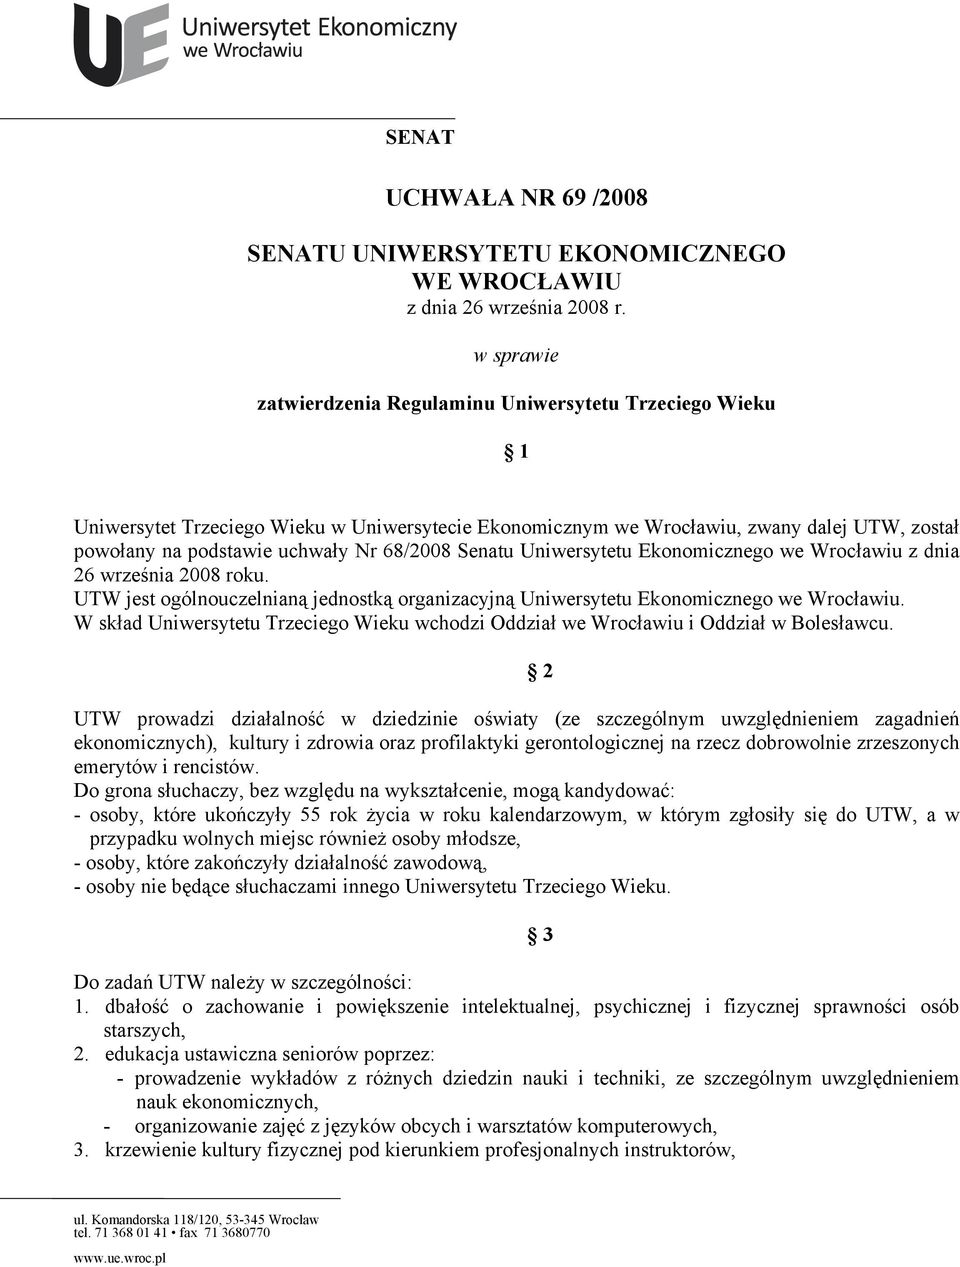 68/2008 Senatu Uniwersytetu Ekonomicznego we Wrocławiu z dnia 26 września 2008 roku. UTW jest ogólnouczelnianą jednostką organizacyjną Uniwersytetu Ekonomicznego we Wrocławiu.